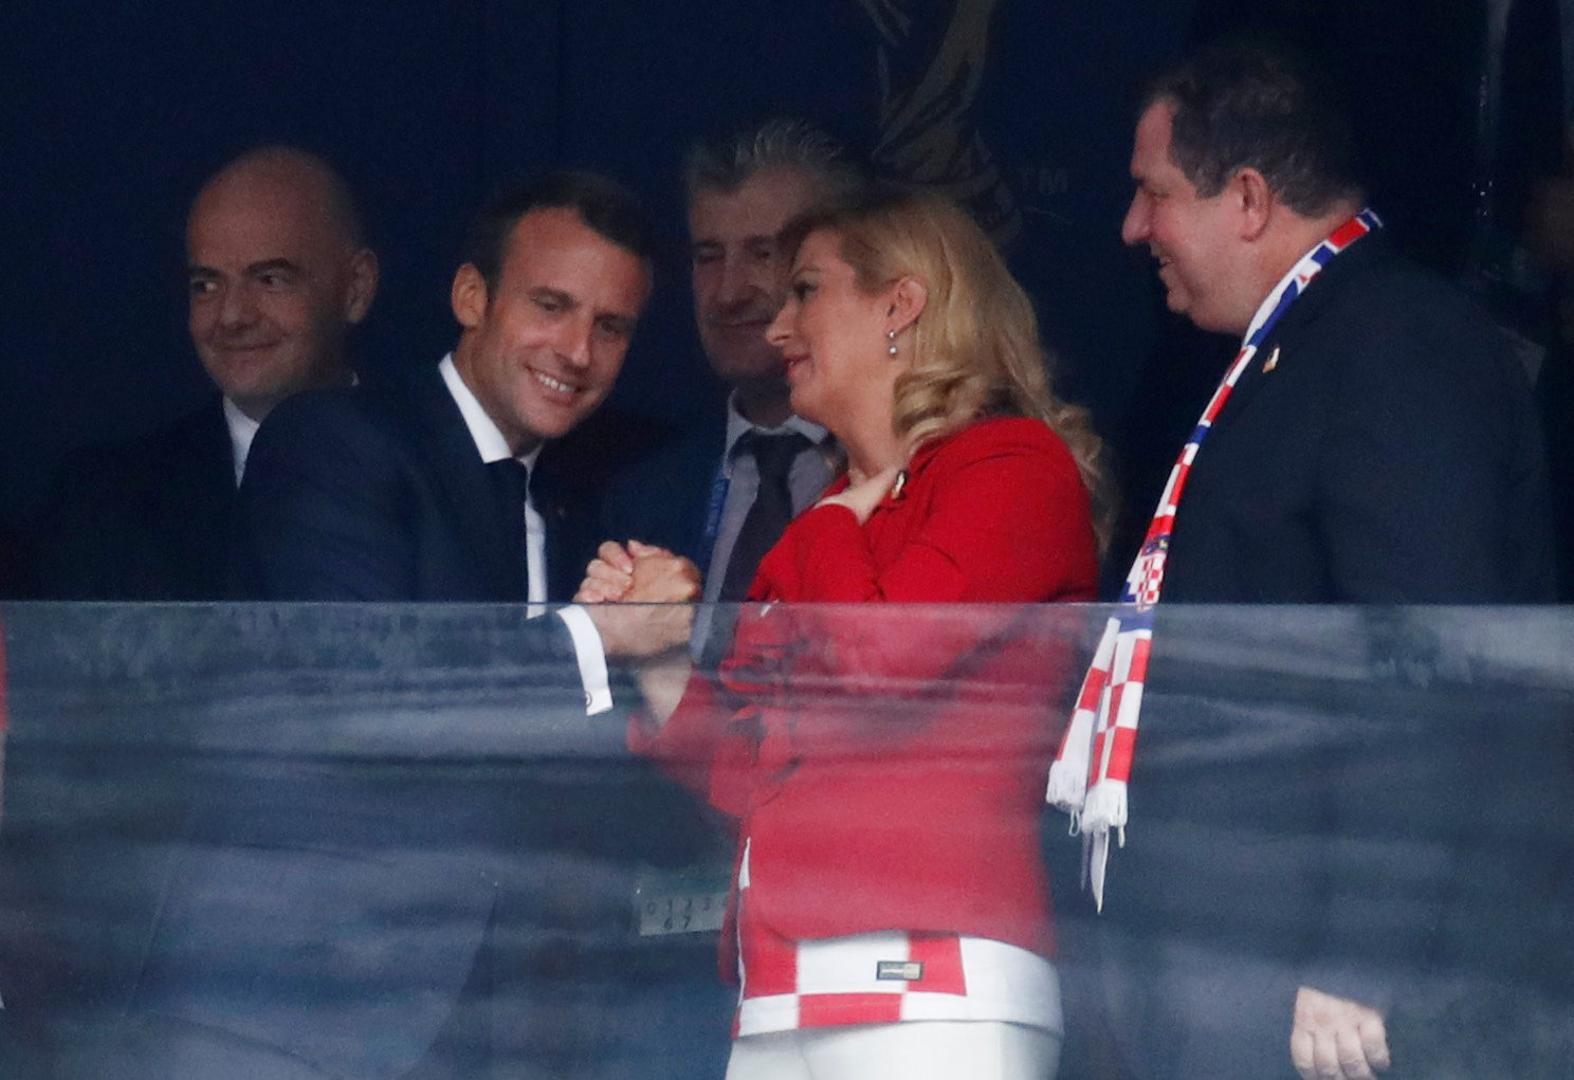 Ona je na utakmicu stigla u društvu supruga Jakova, a finale će gledati u društvu francuskog predsjednika Emanuela Macrona i njegove supruge Brigitte.

